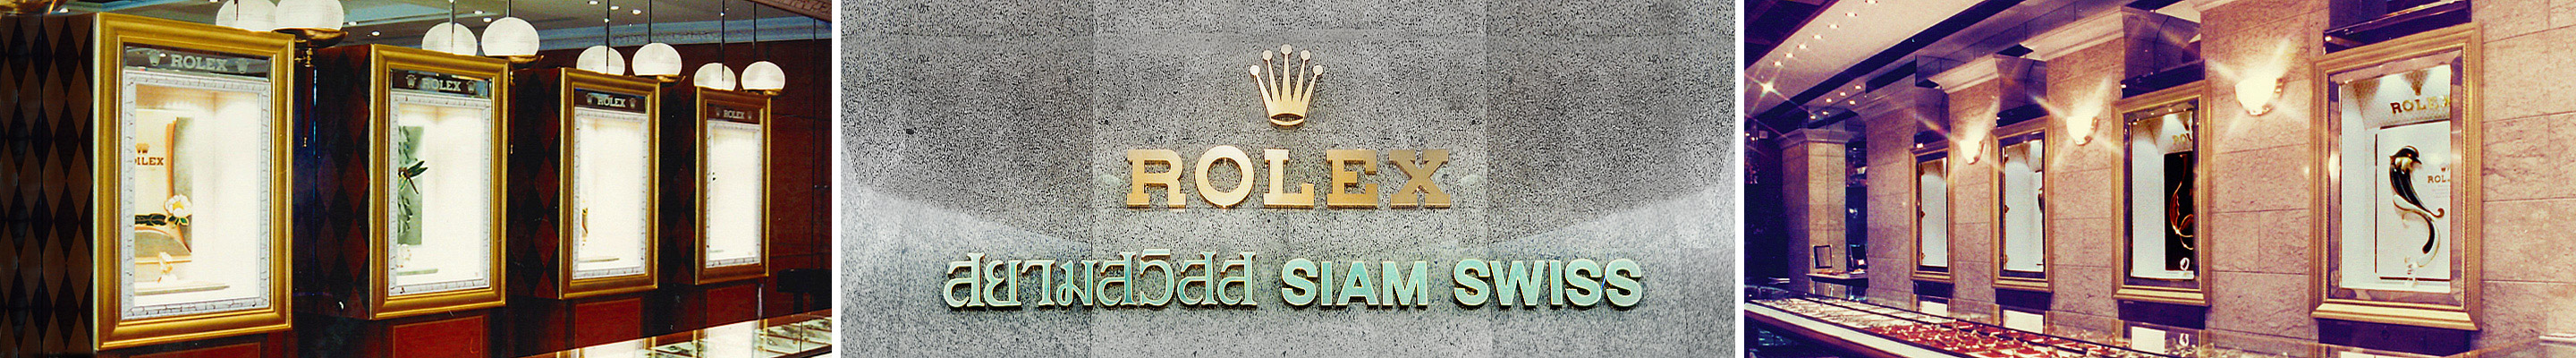 Rolex ประวัติของเรา | Rolex Official Retailer - Siam Swiss